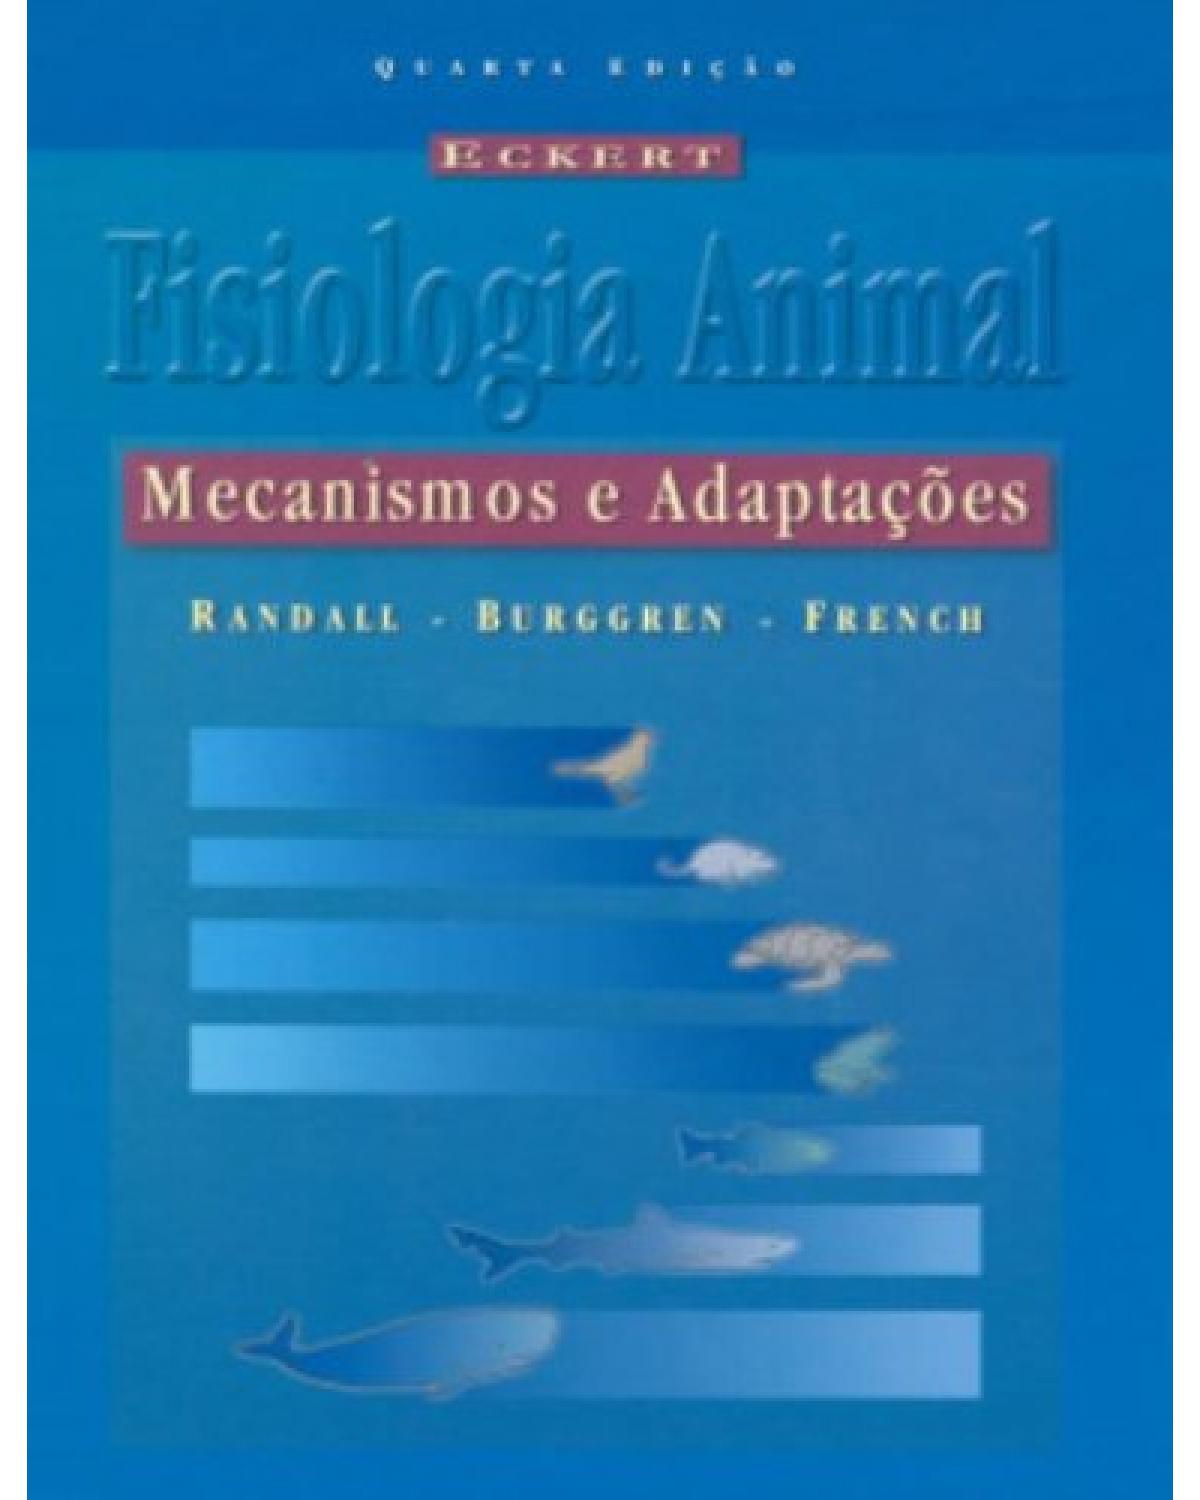 Eckert - Fisiologia animal - Mecanismos e adaptações - 4ª Edição | 2000